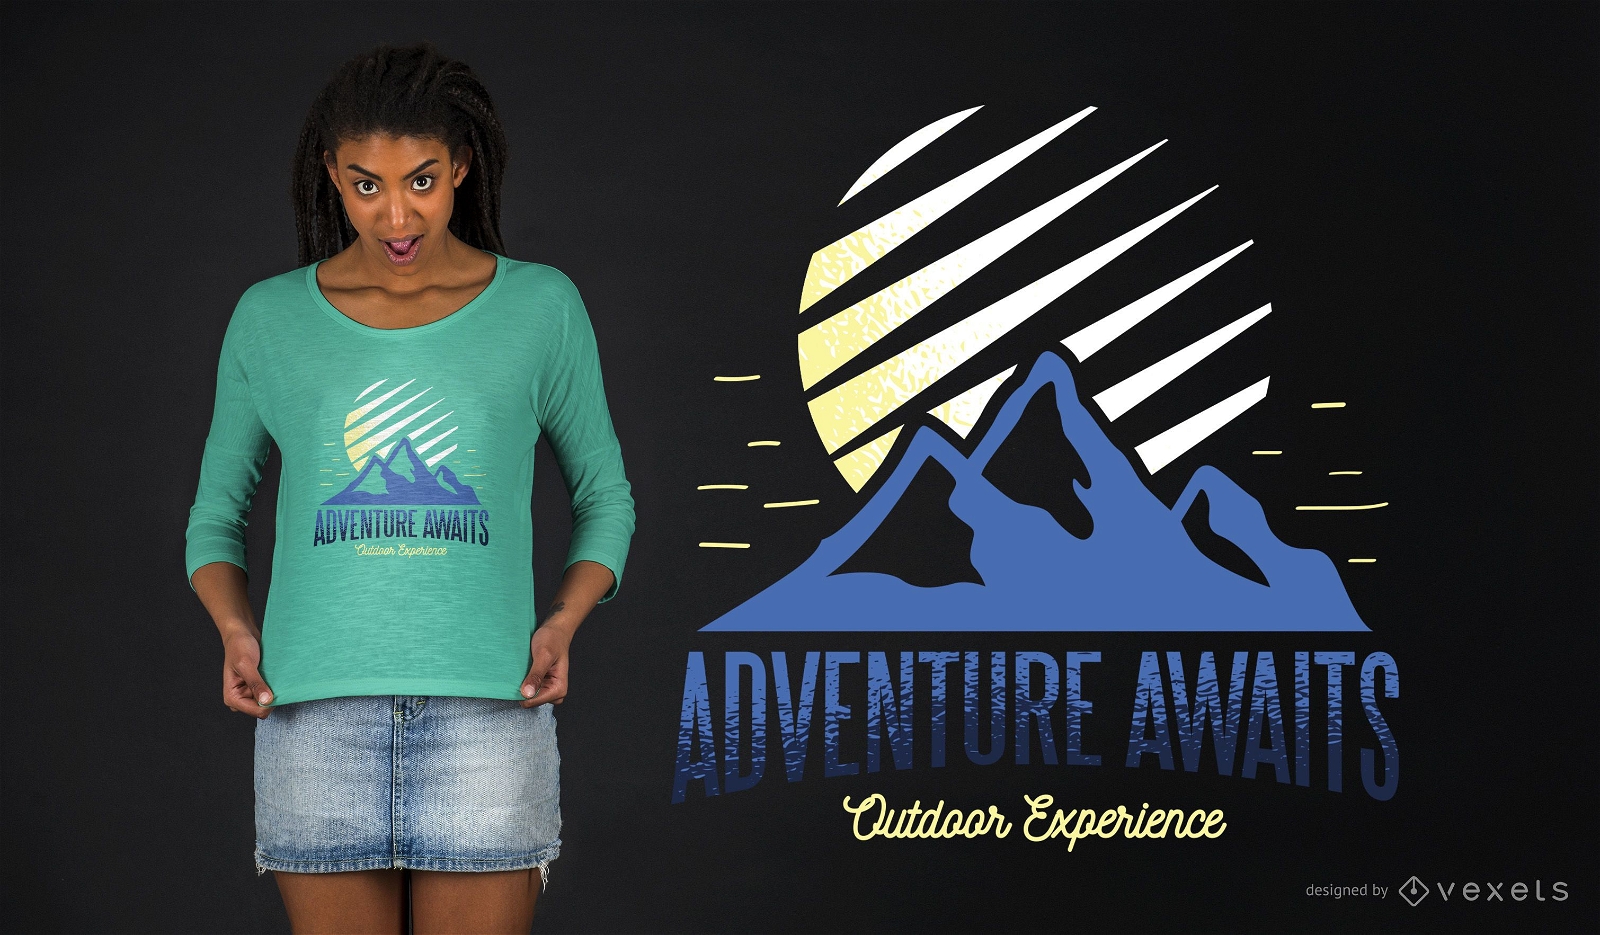 A aventura espera o design de camisetas para experi?ncias ao ar livre